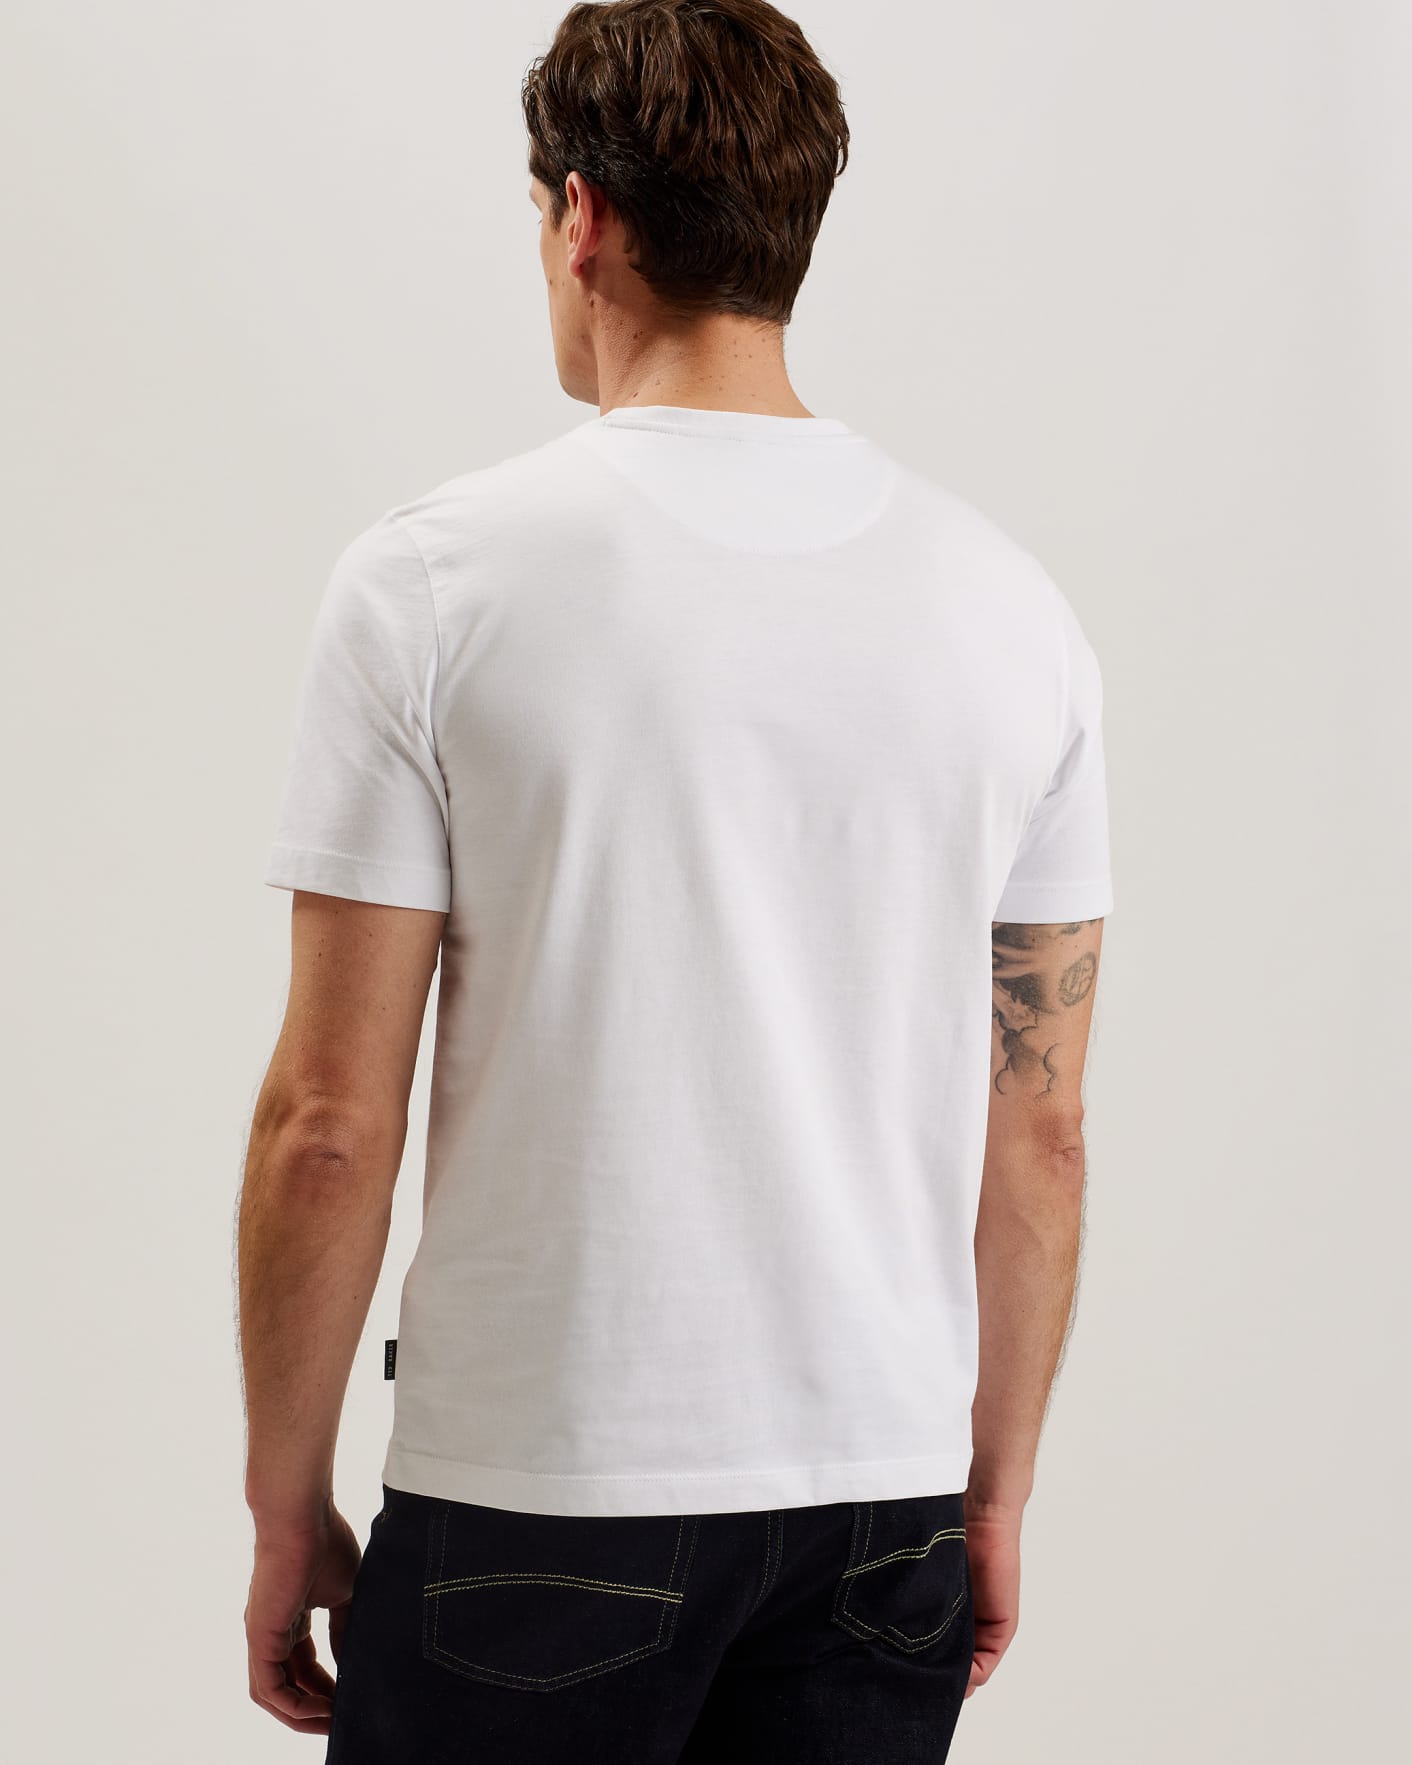 TYWINN - WHITE, Camisetas